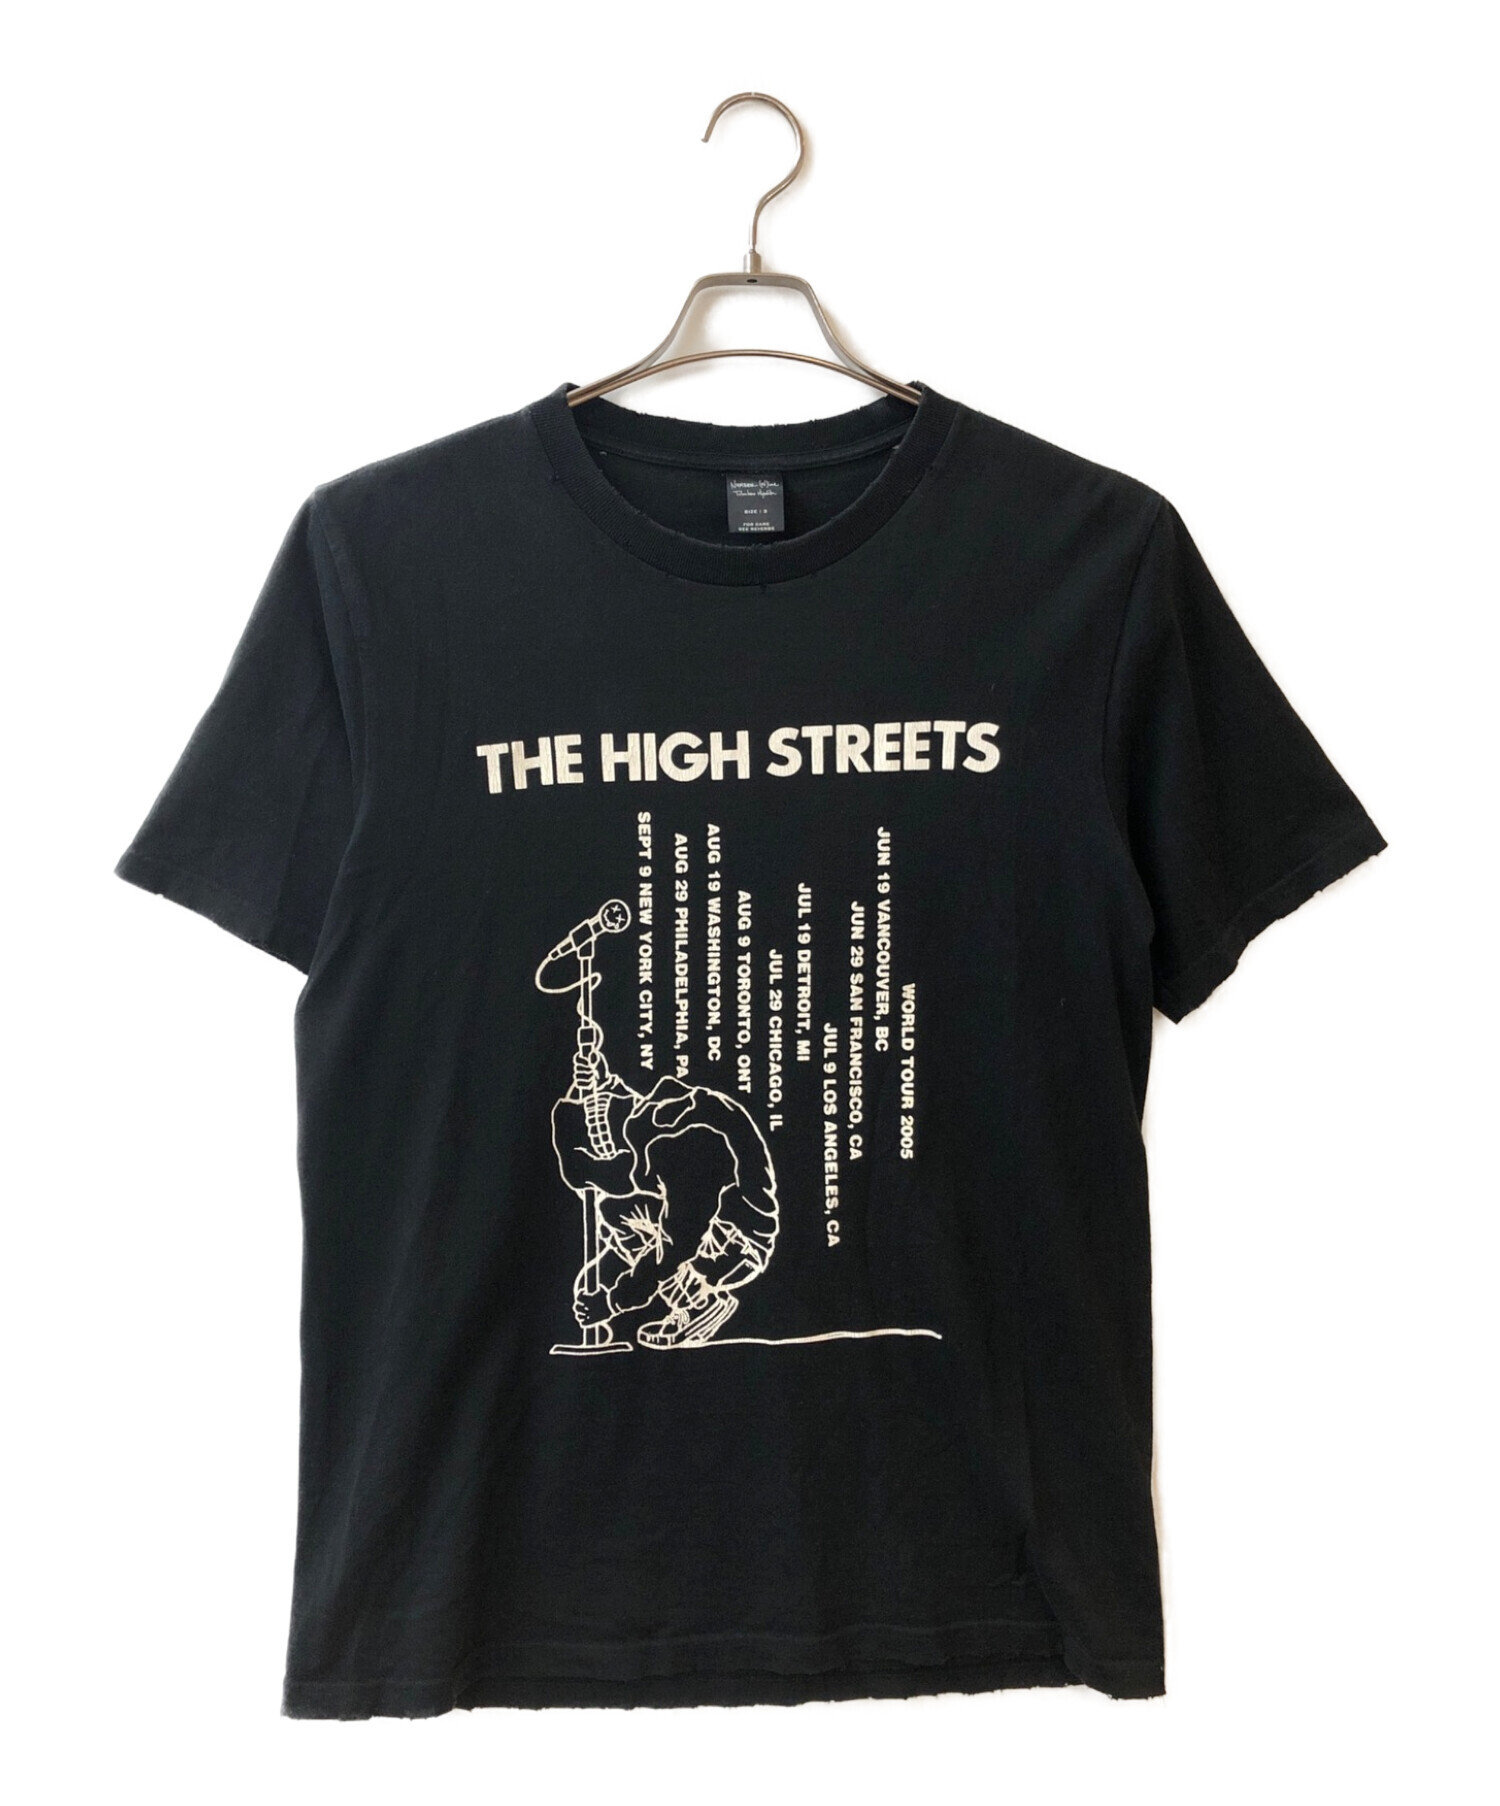 大人気格安 ナンバーナイン THE HIGH STREETS期 Tシャツ e8h02